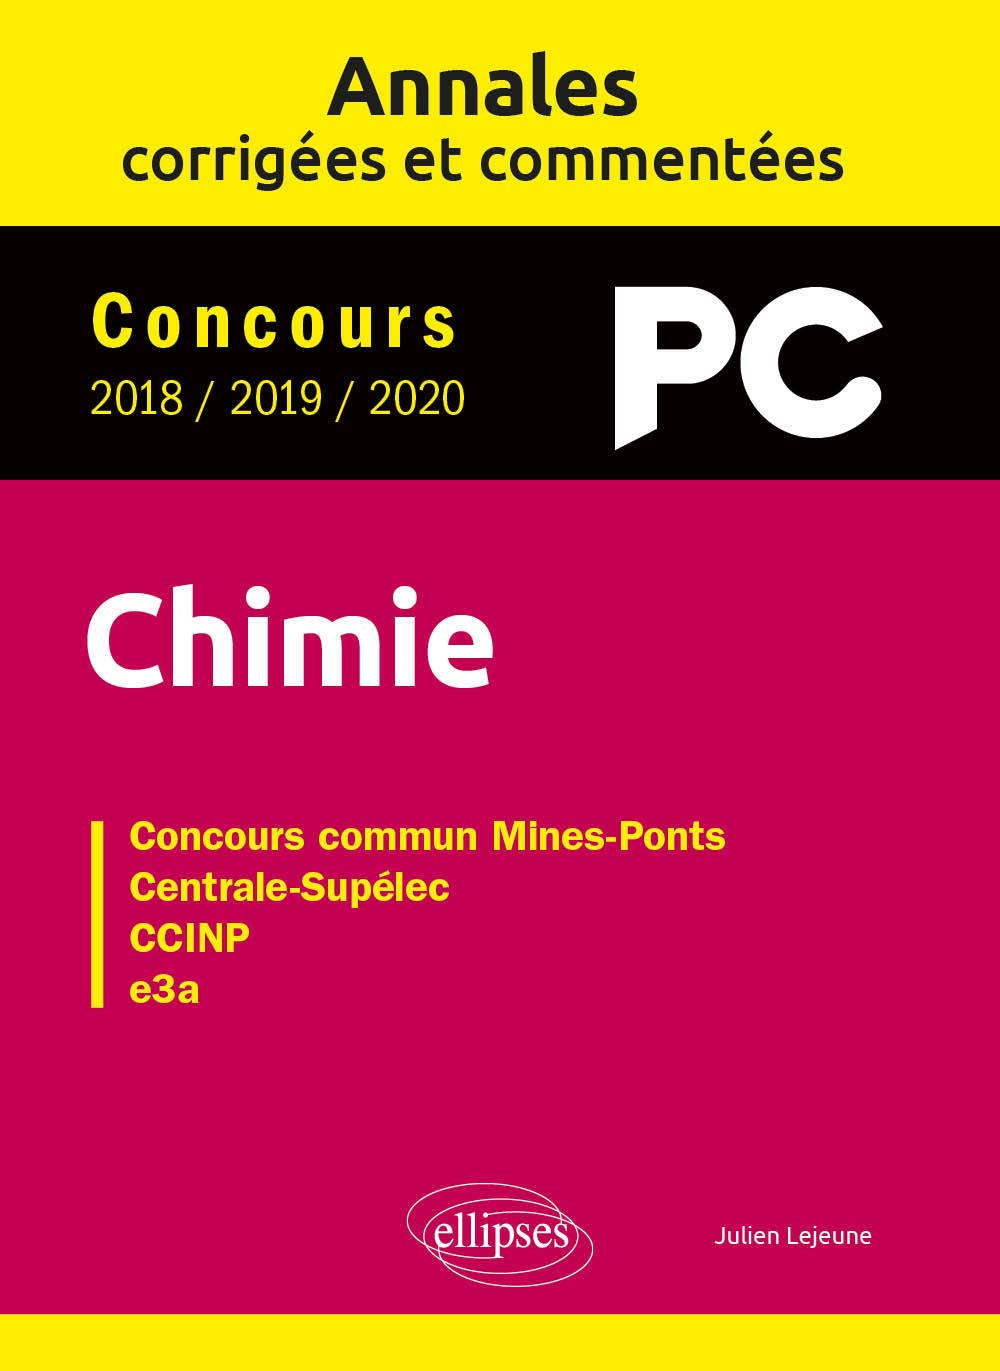 Chimie PC : annales corrigées et commentées, concours 2018, 2019, 2020 : concours commun Mines-Ponts